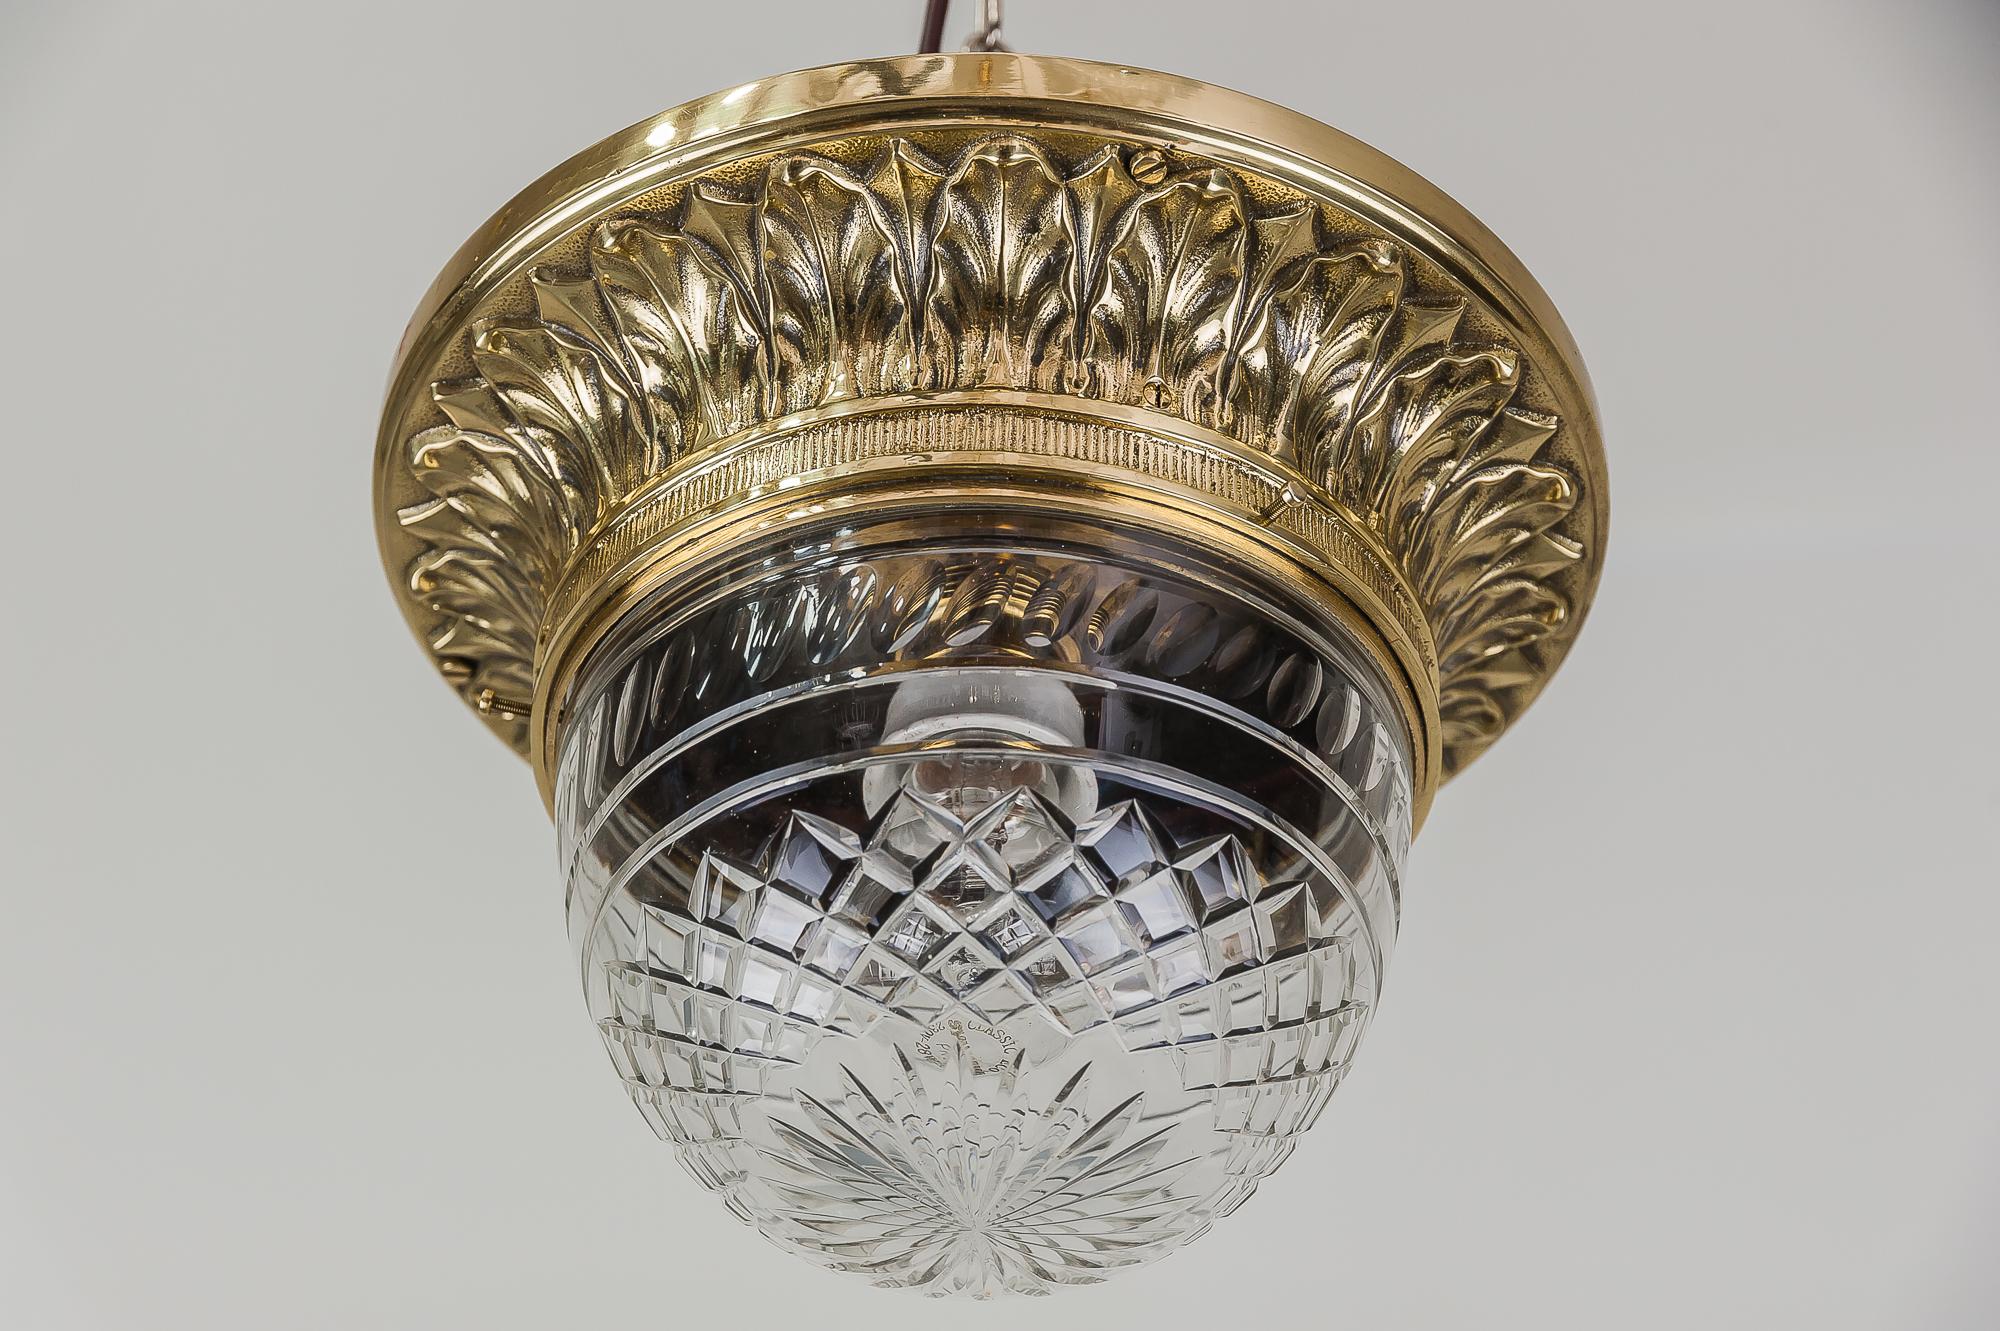 Solid Jugendstil ceiling lamp with original cut-glass
polished and stove enameled.